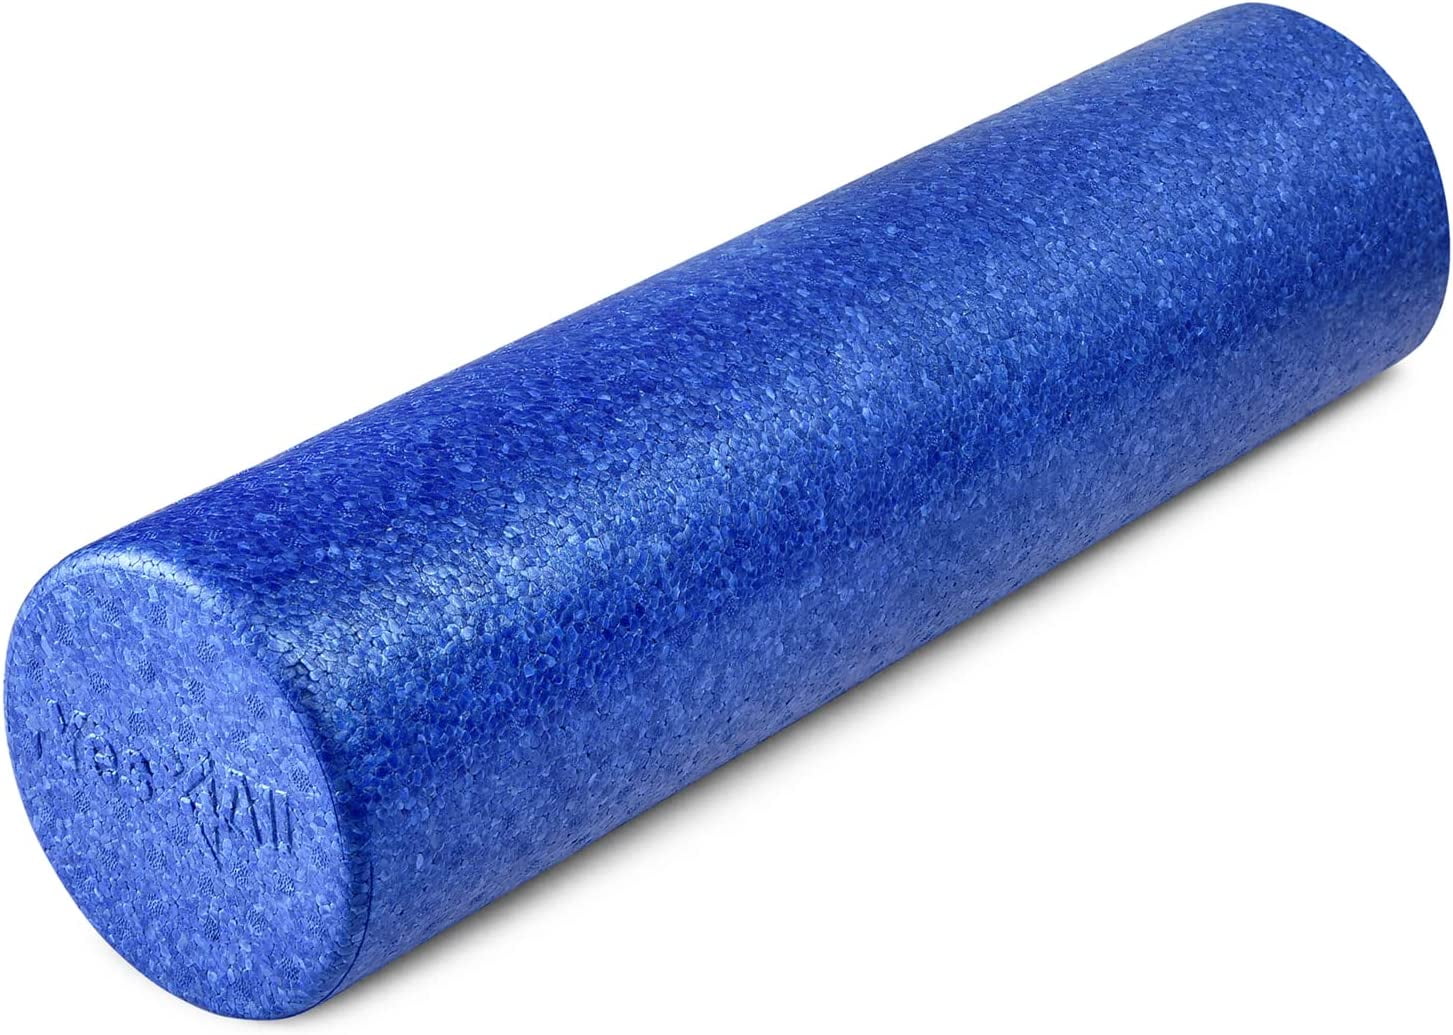 Artículos nuevos y usados en venta en Exercise Foam Rollers